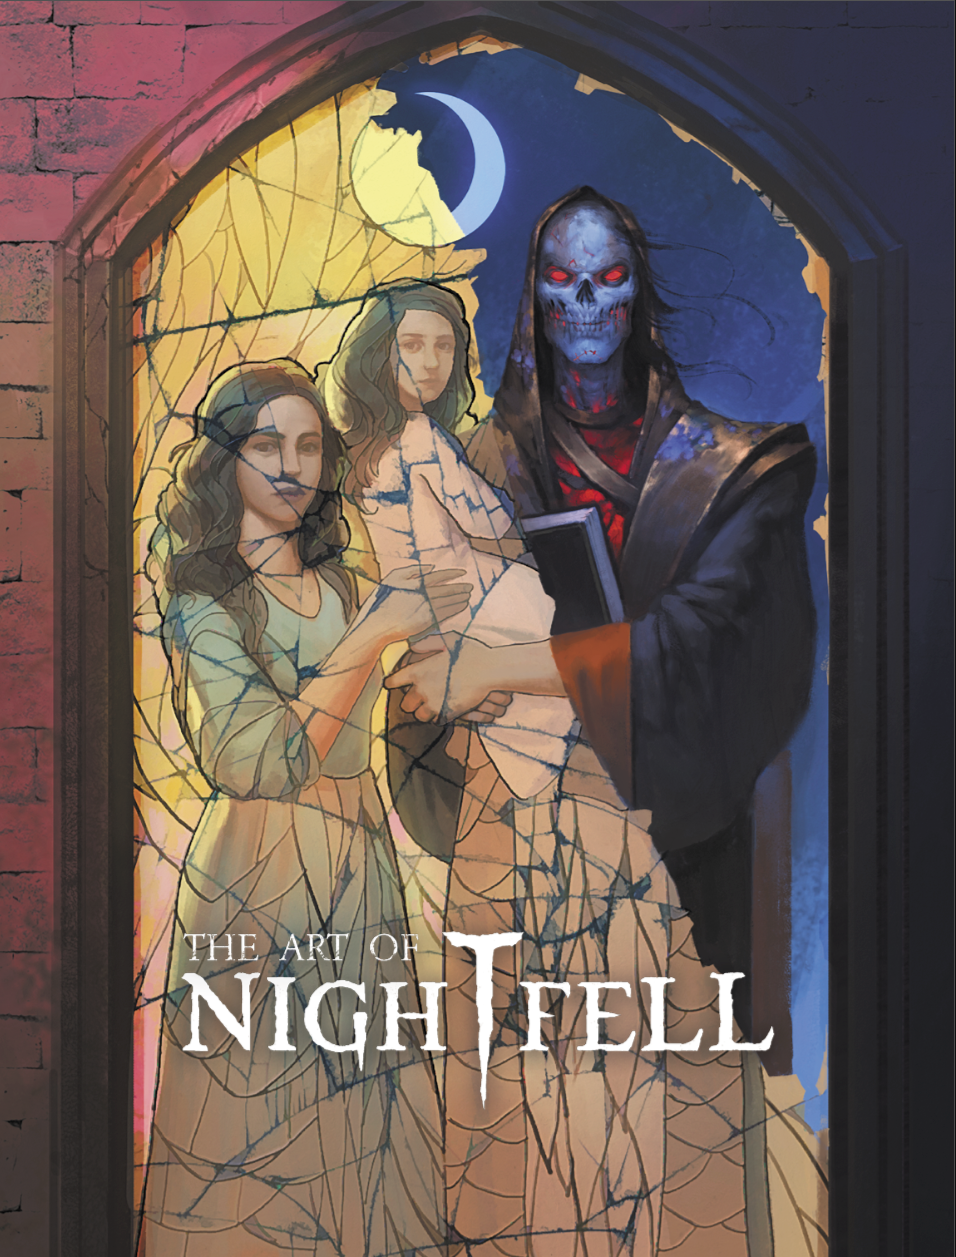 Nightfell: Artbook